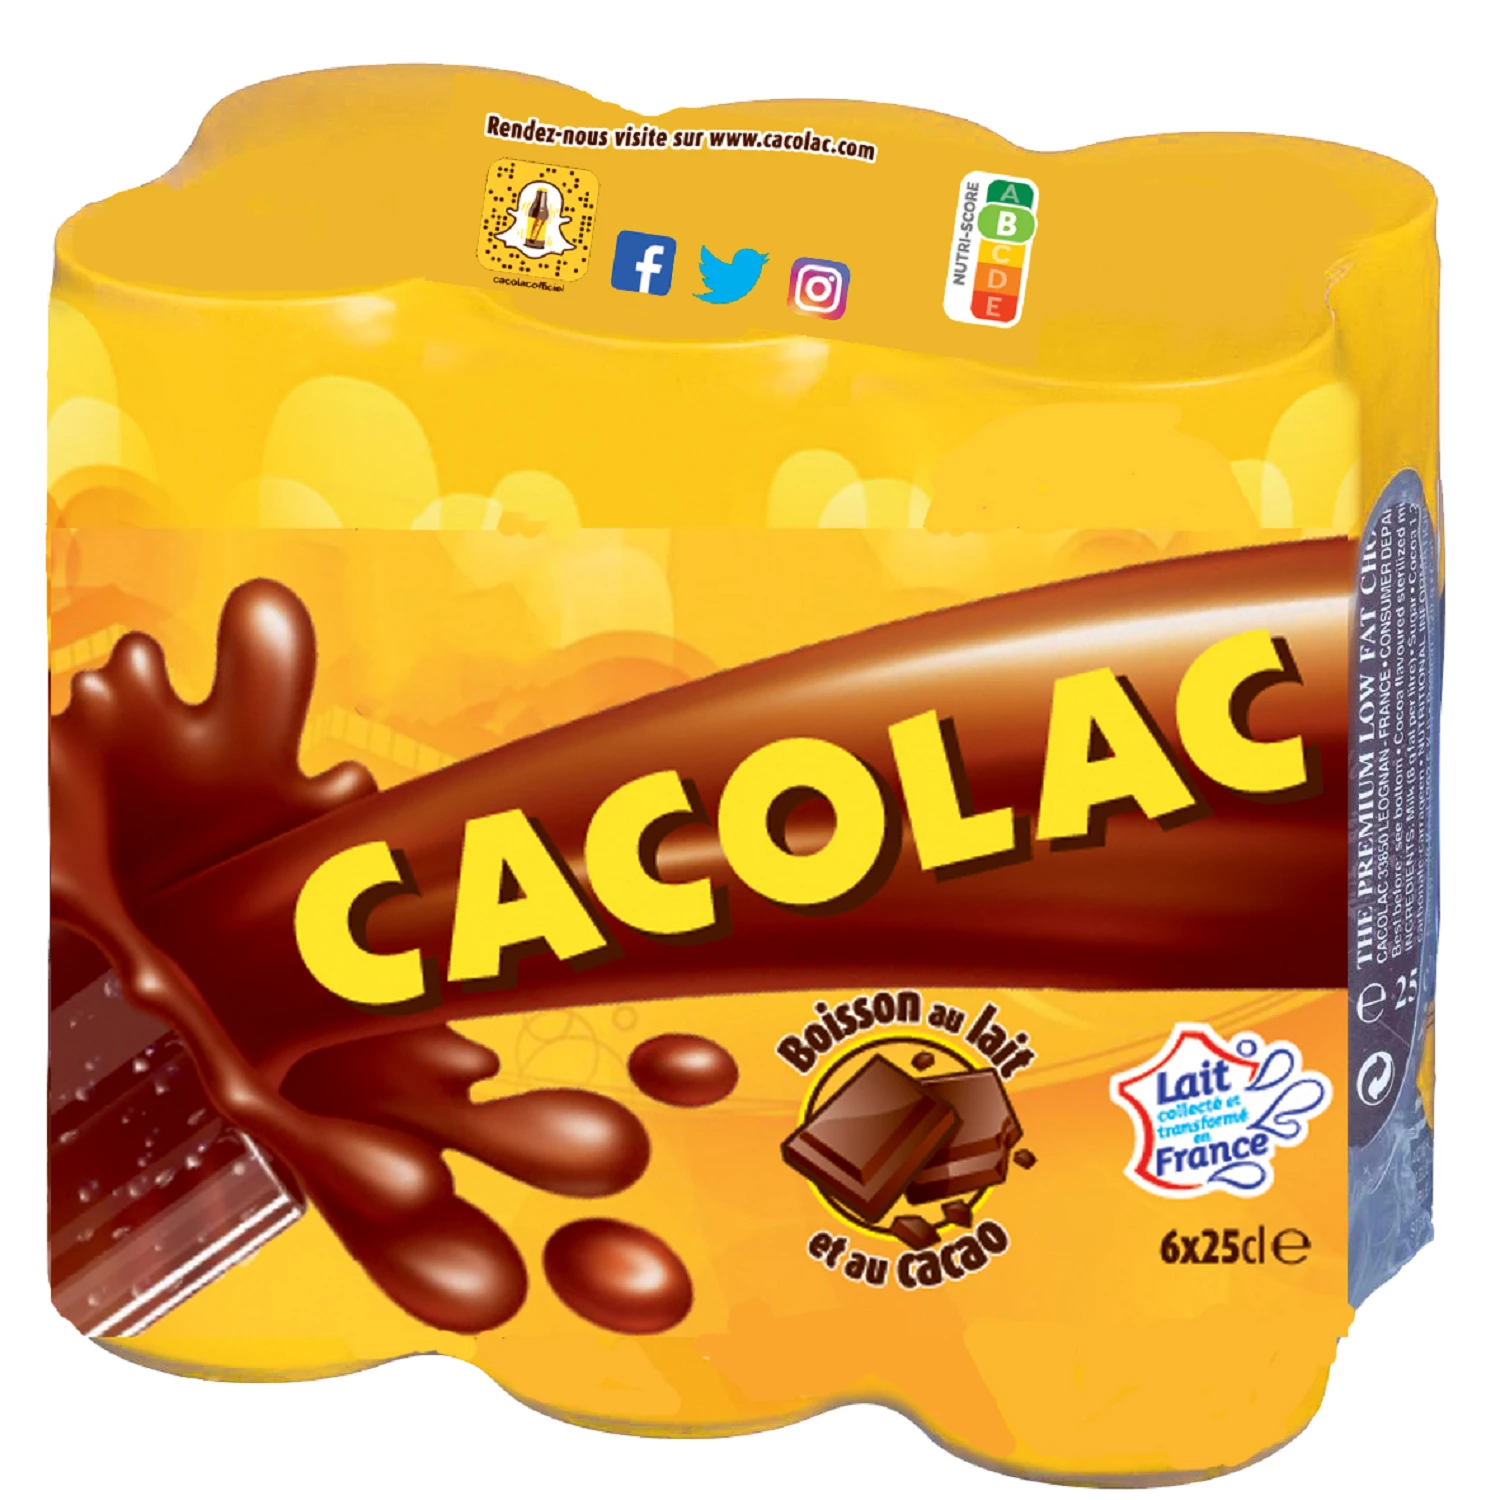 Boisson lactée au cacao 6x25cl - CACOLAC